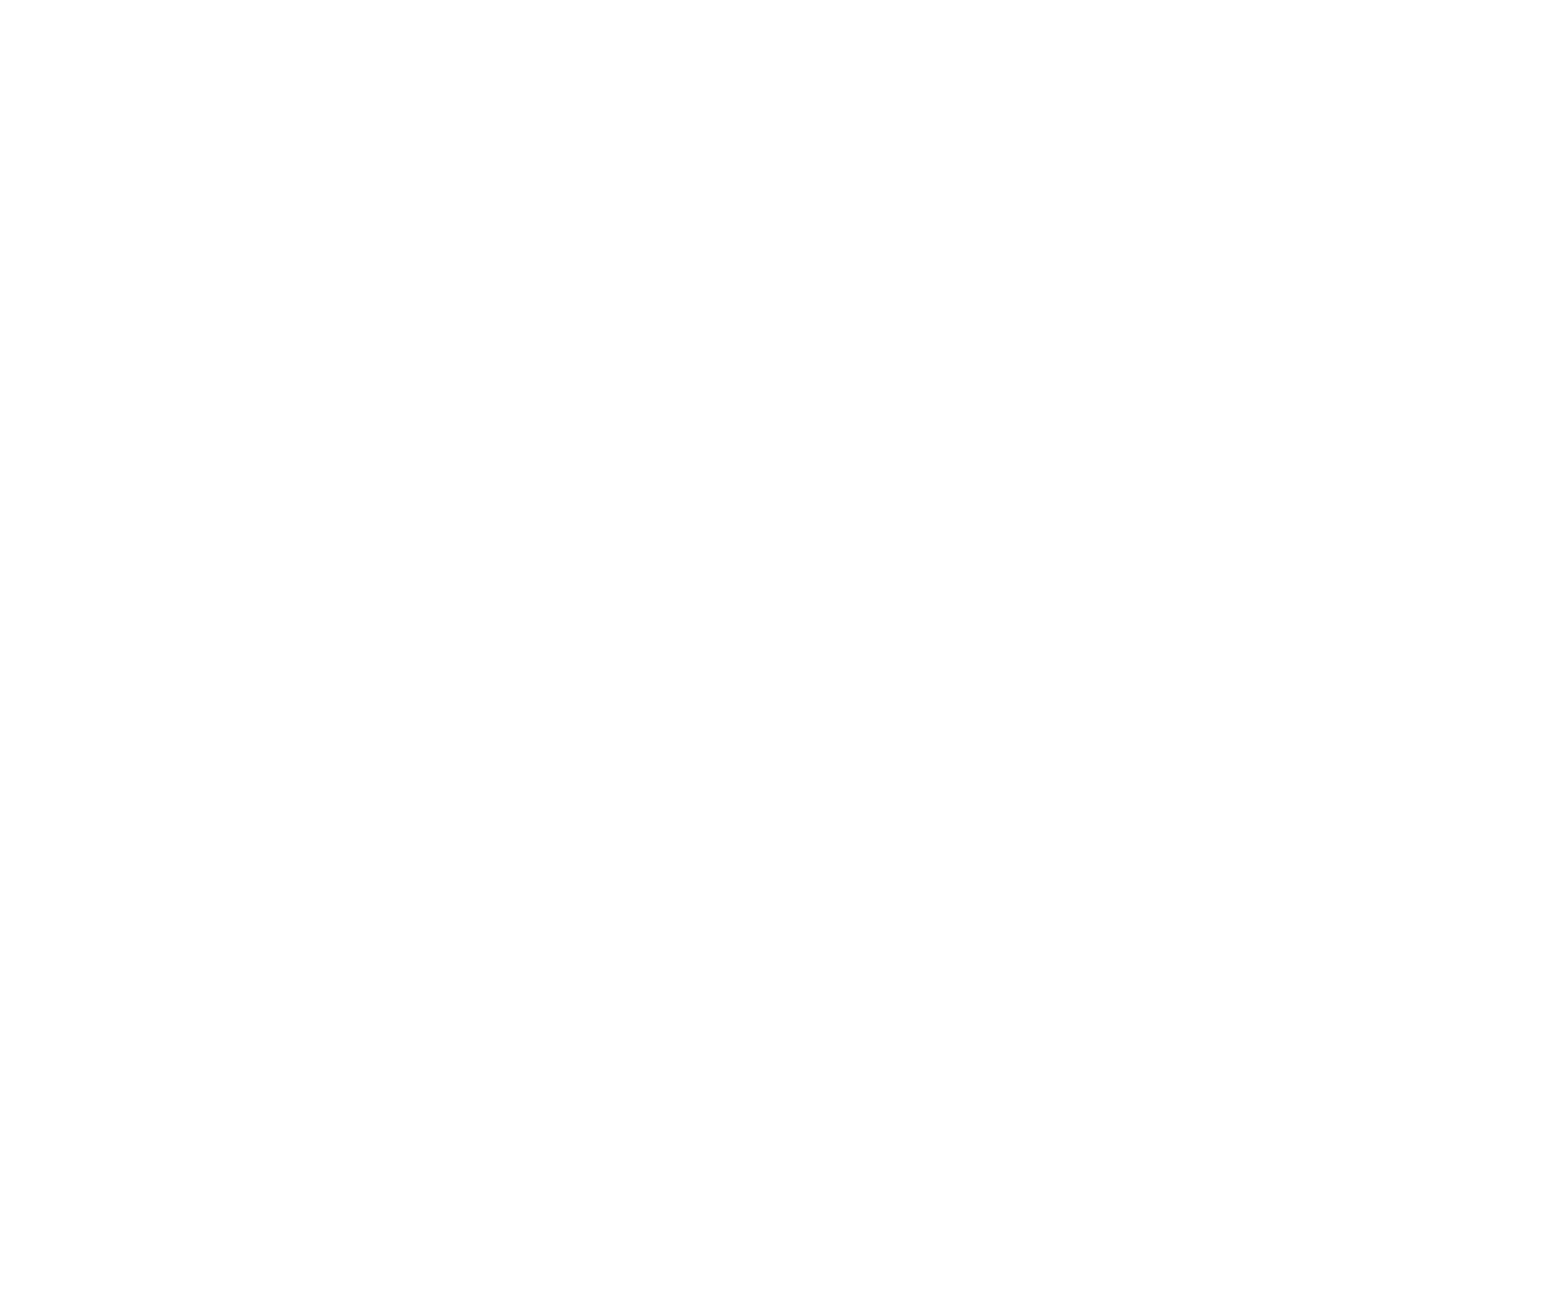 KOP Digital 